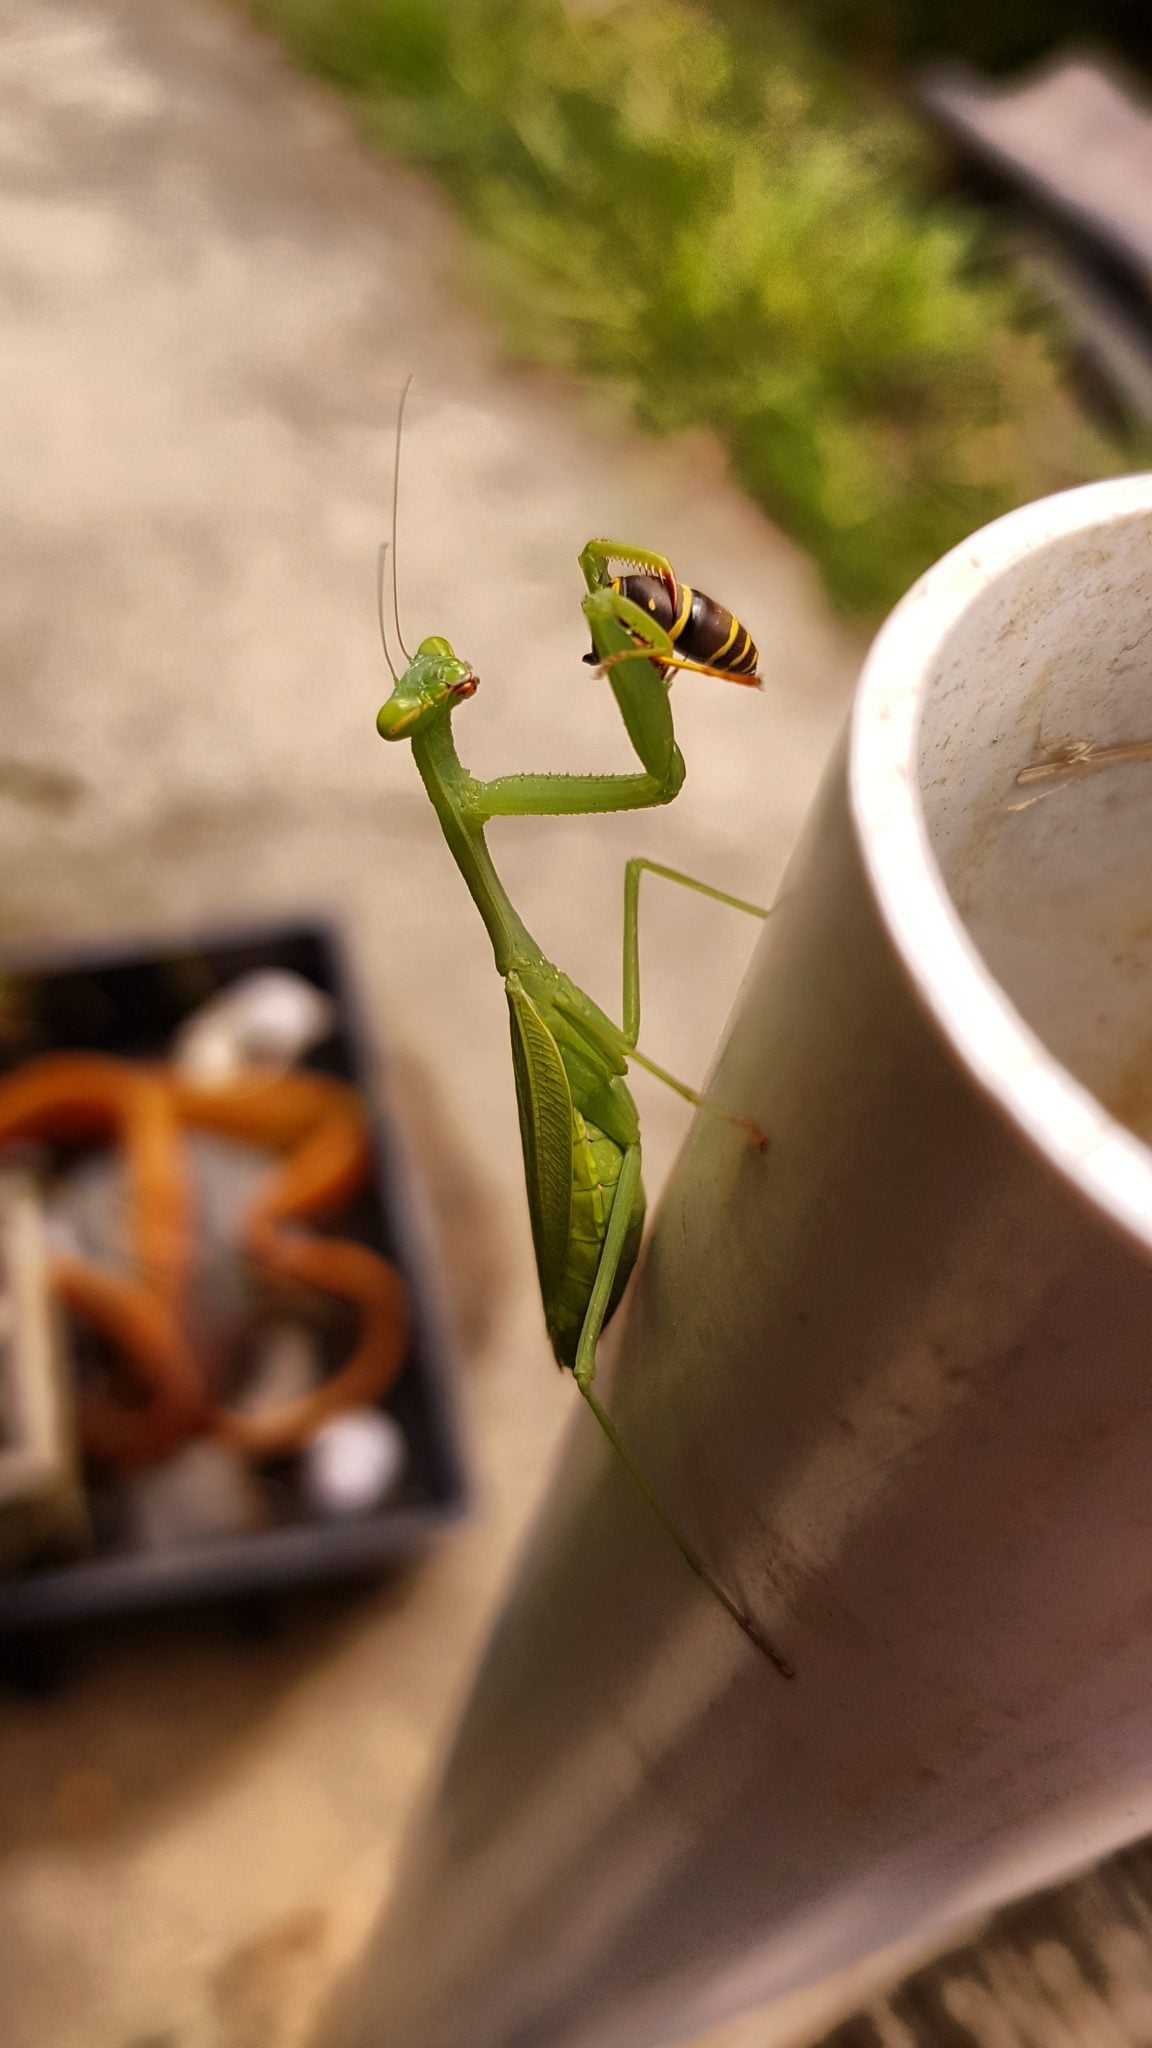 Praying Mantis eating a wasp